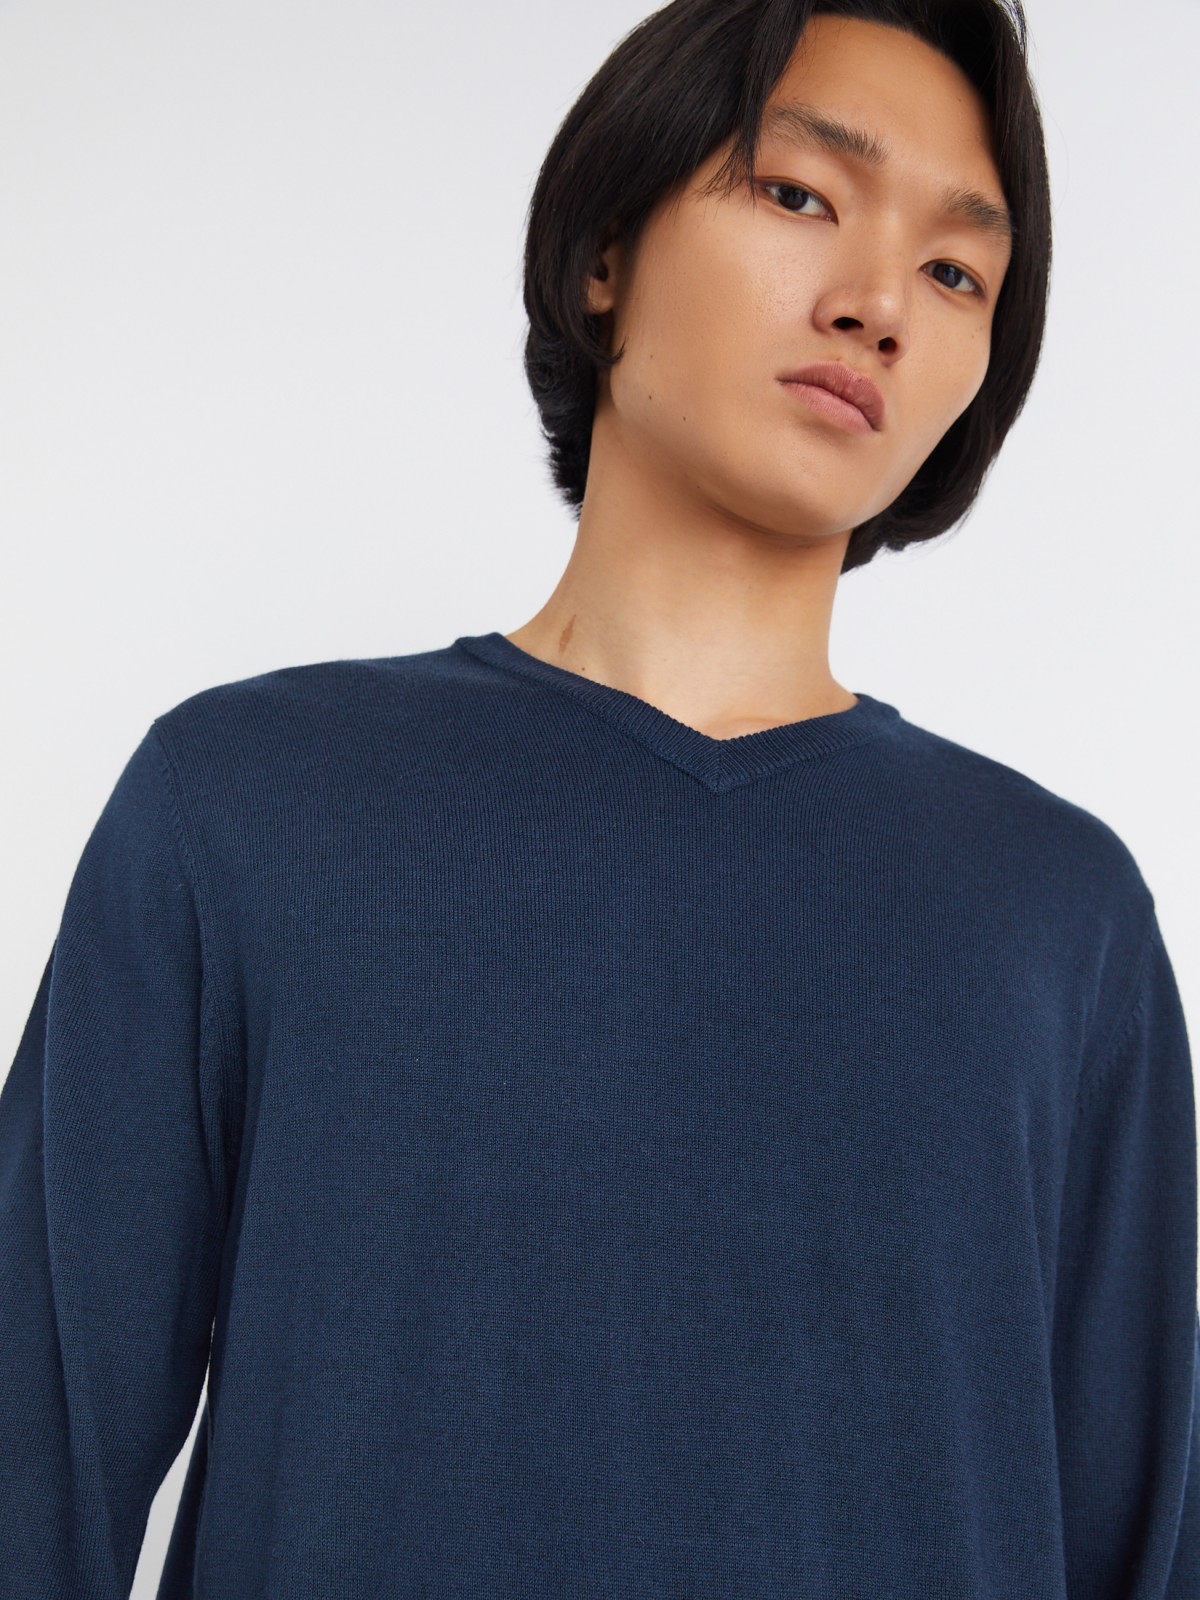 Шерстяной трикотажный пуловер с треугольным вырезом и длинным рукавом zolla 013346163042, цвет синий, размер M - фото 3